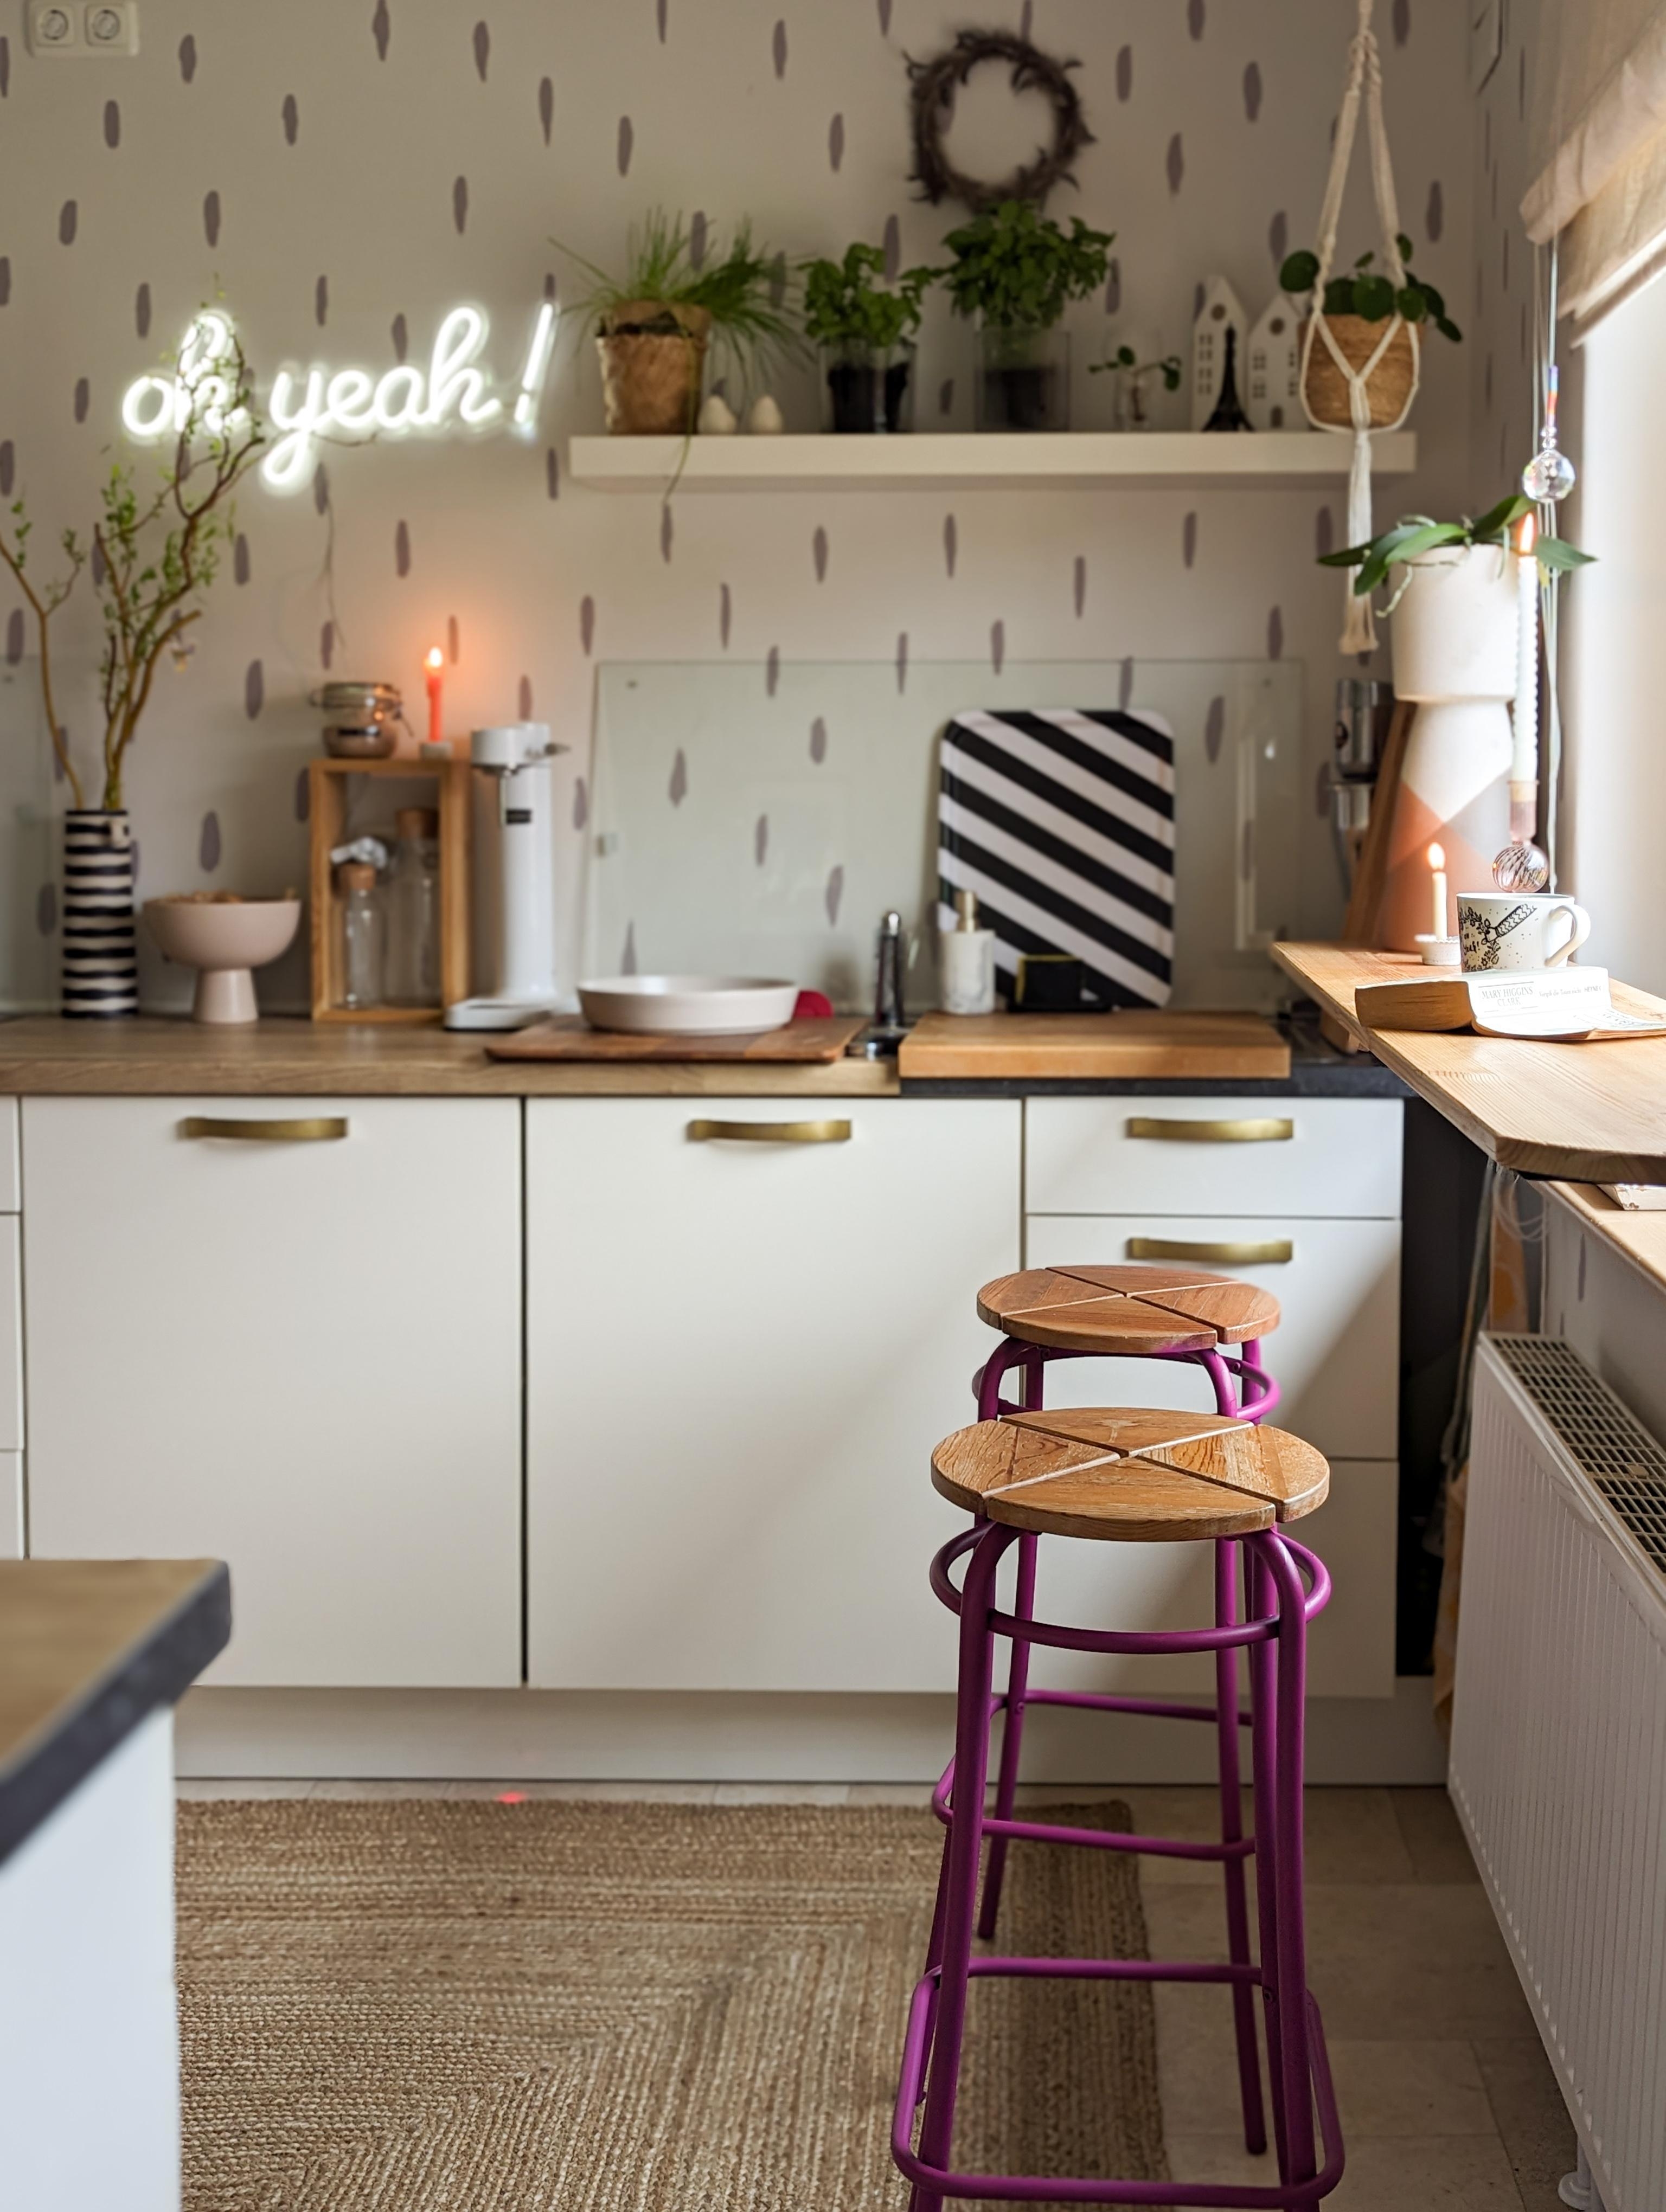 Neu #gesprühte #barhocker - liebs

#kitchendesign #altbau #cozyhome #barhocker #platzamfenster #küche #kitchen 